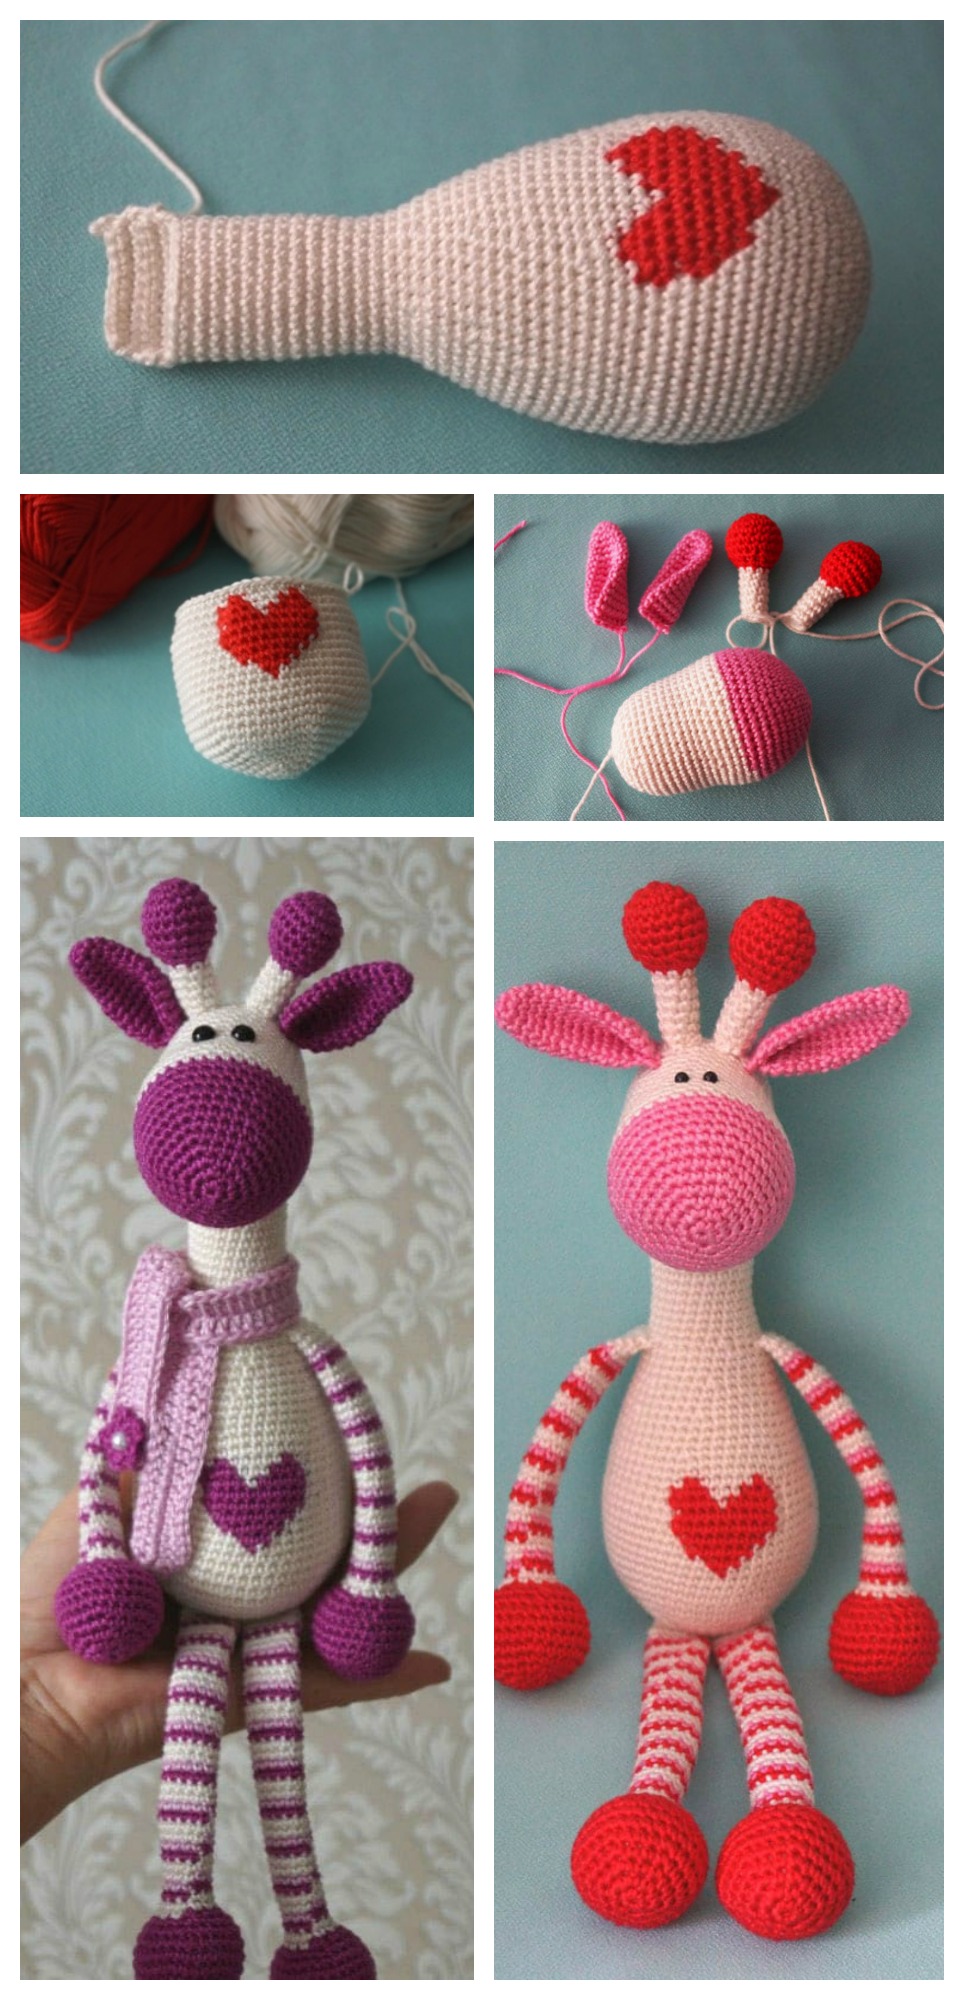 Cute Crochet Giraffe Free Pattern 